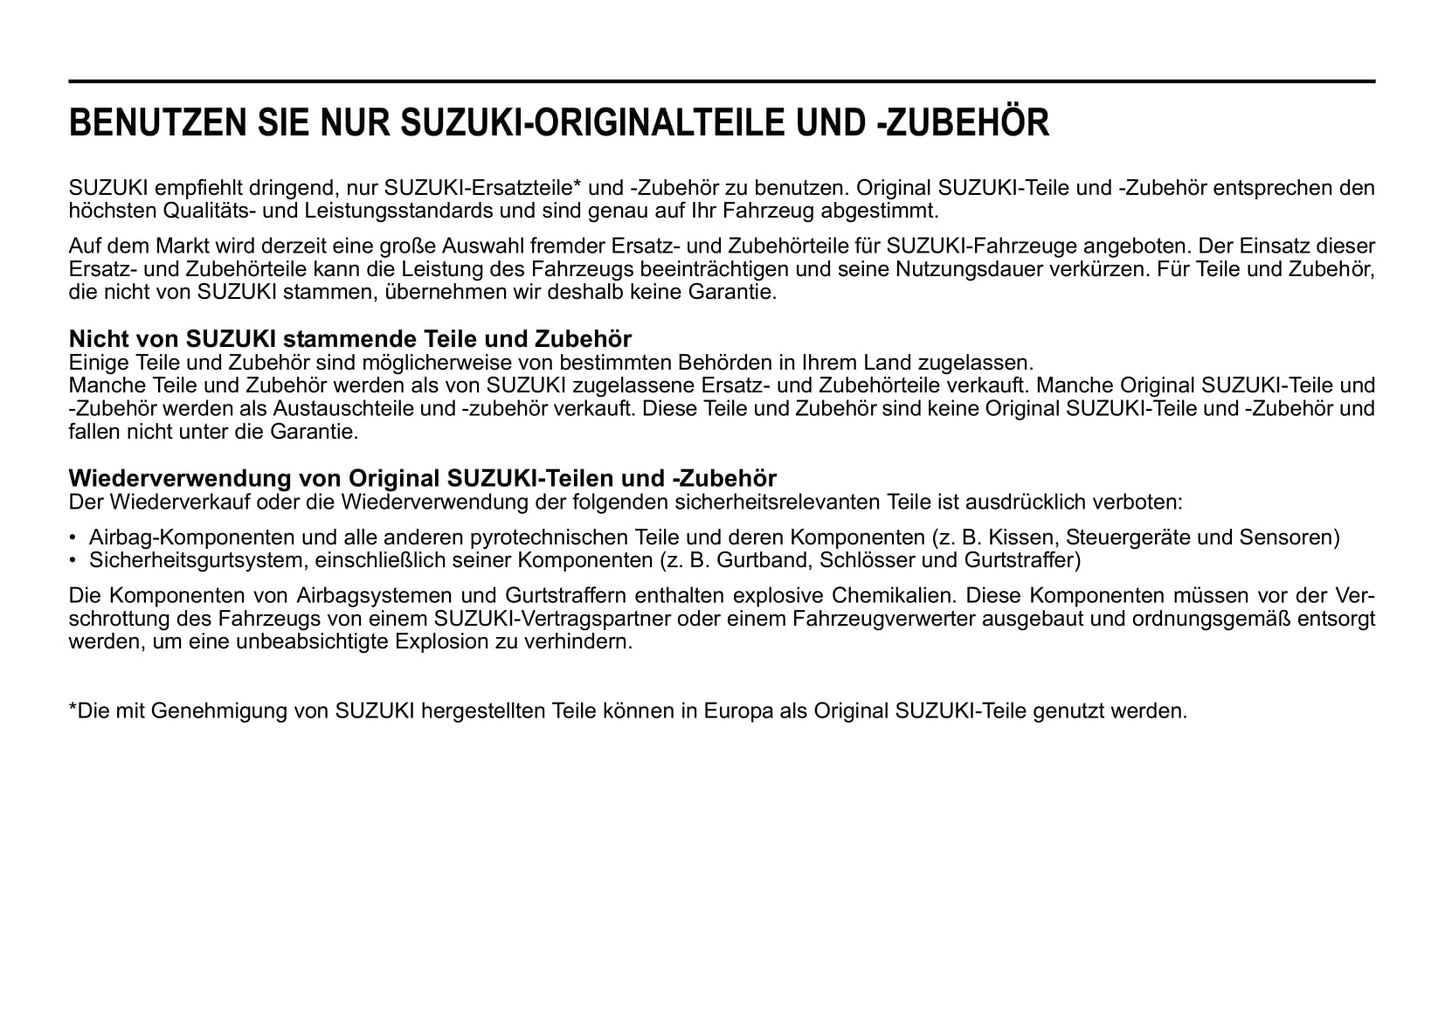 2020-2021 Suzuki Swift Bedienungsanleitung | Deutsch